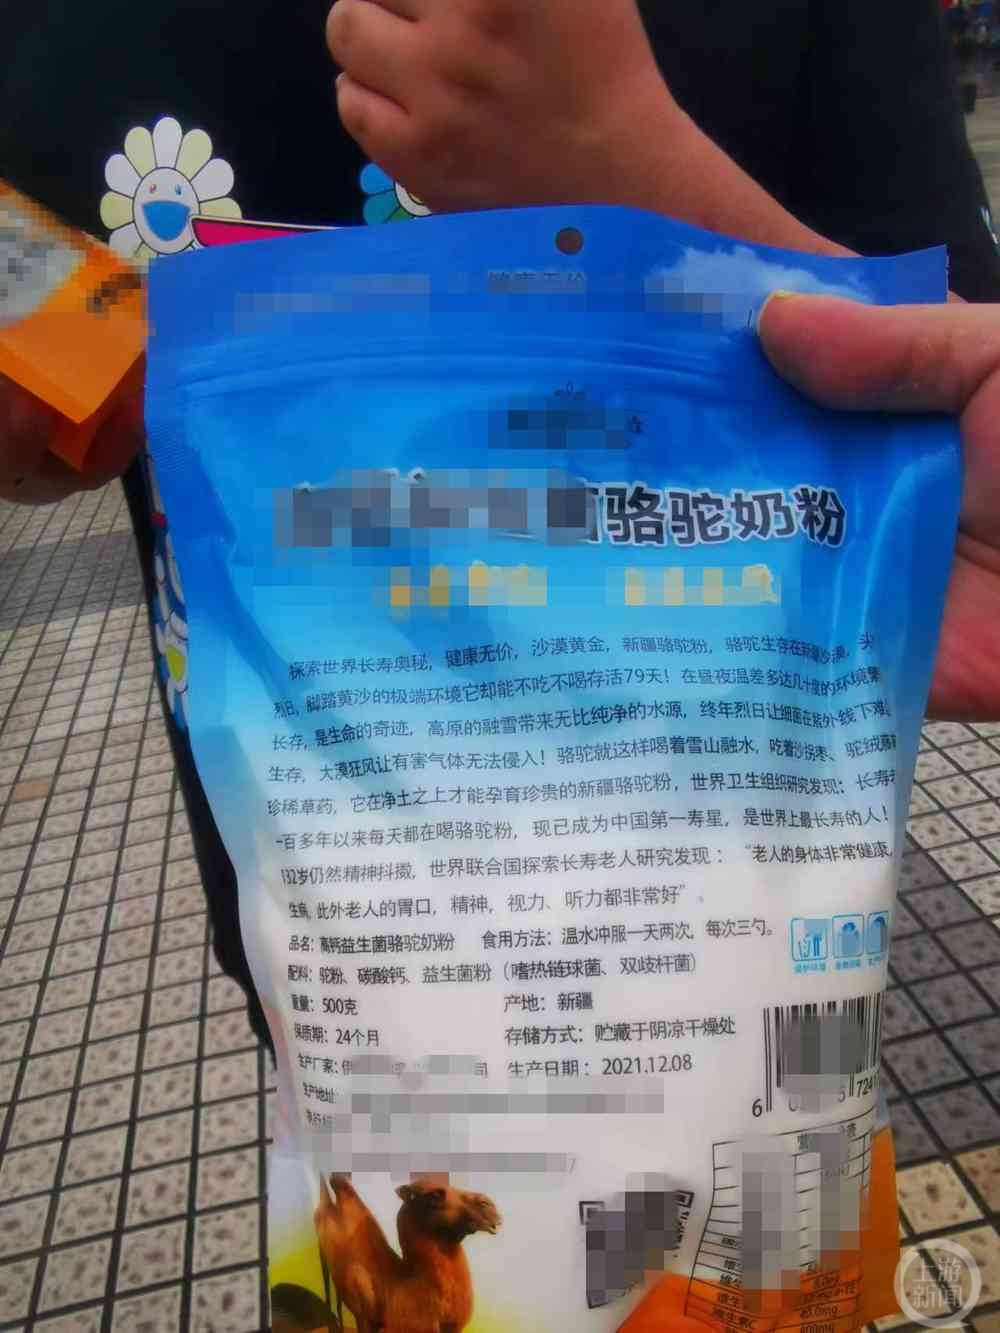 邵某及其朋友将购买的骆驼奶粉送到巴南市场监管部门进行投诉   图片来源：上游新闻记者摄